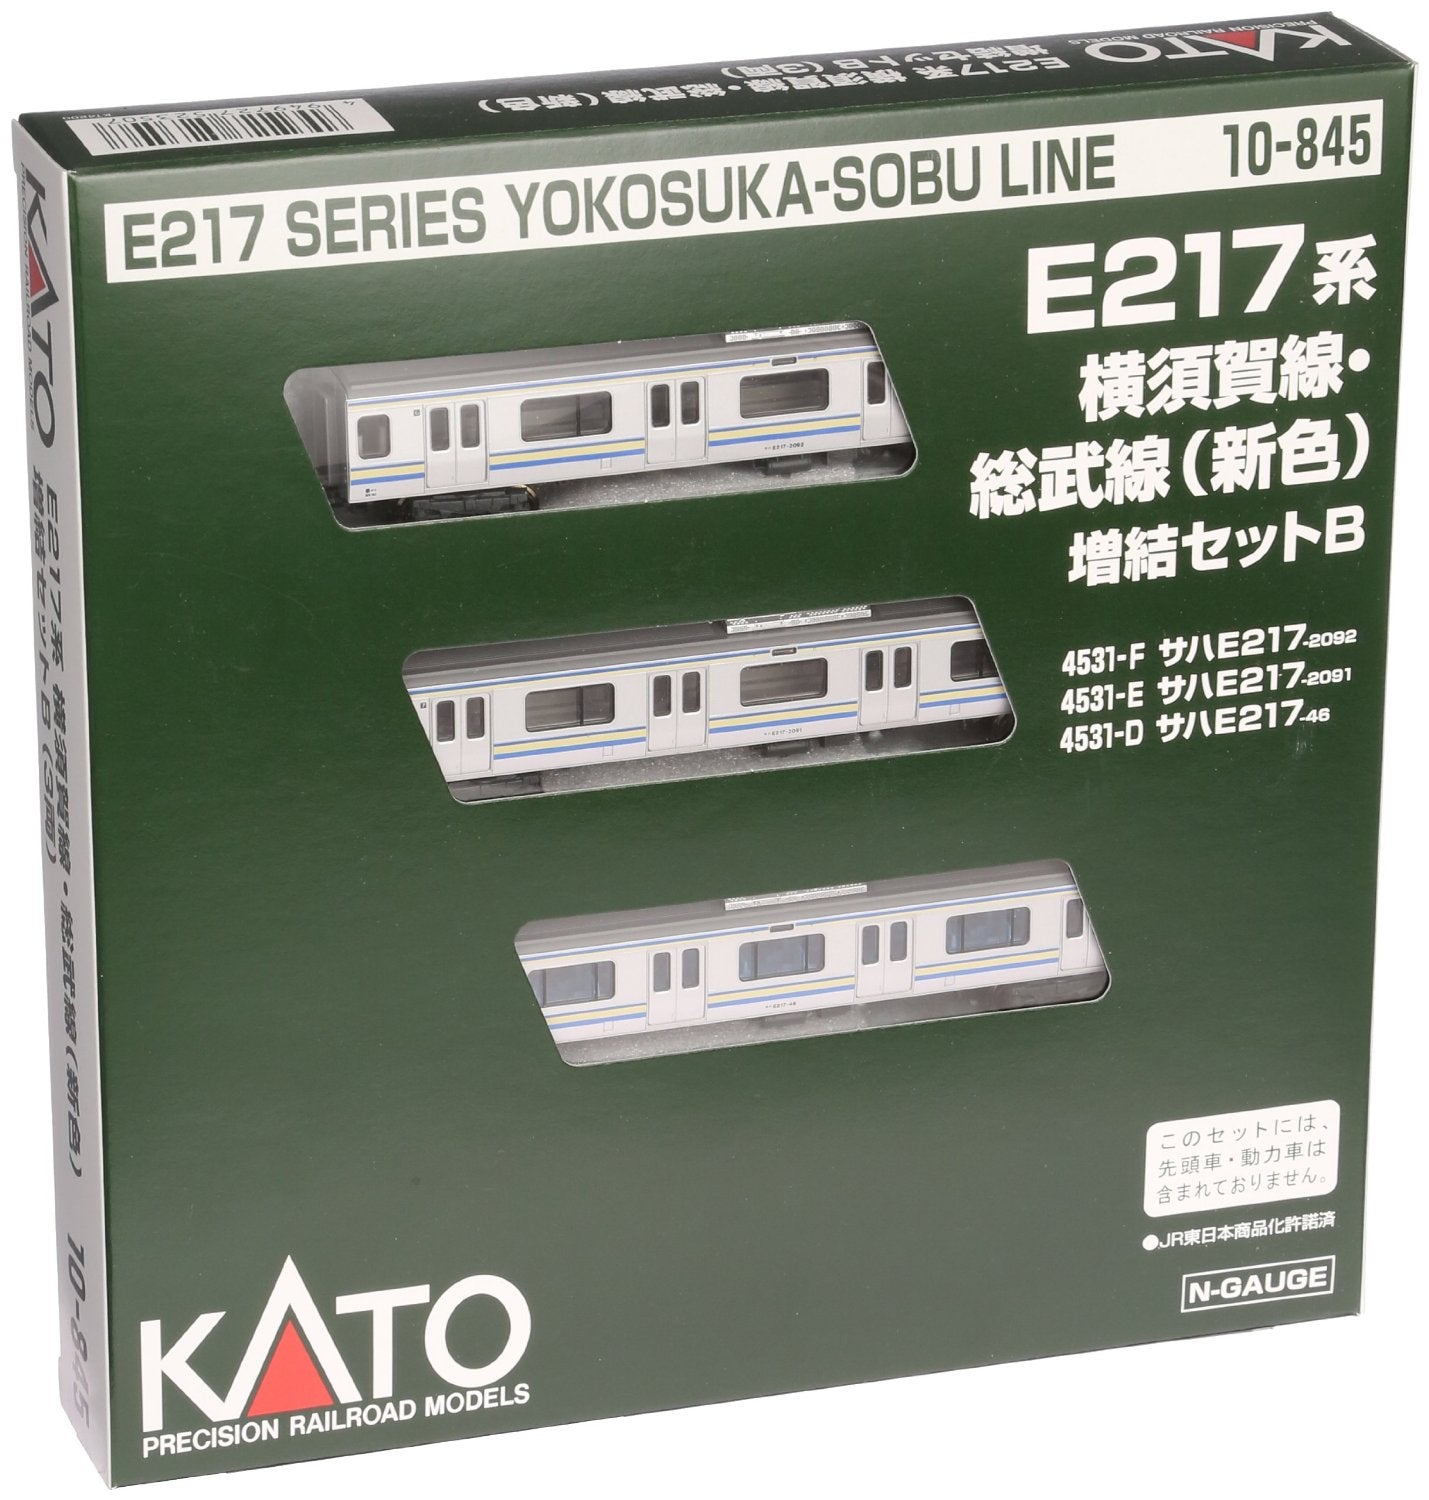 10-845 E217 Yokosuka Line & Soubu Line New Color Add-On B 3-Car